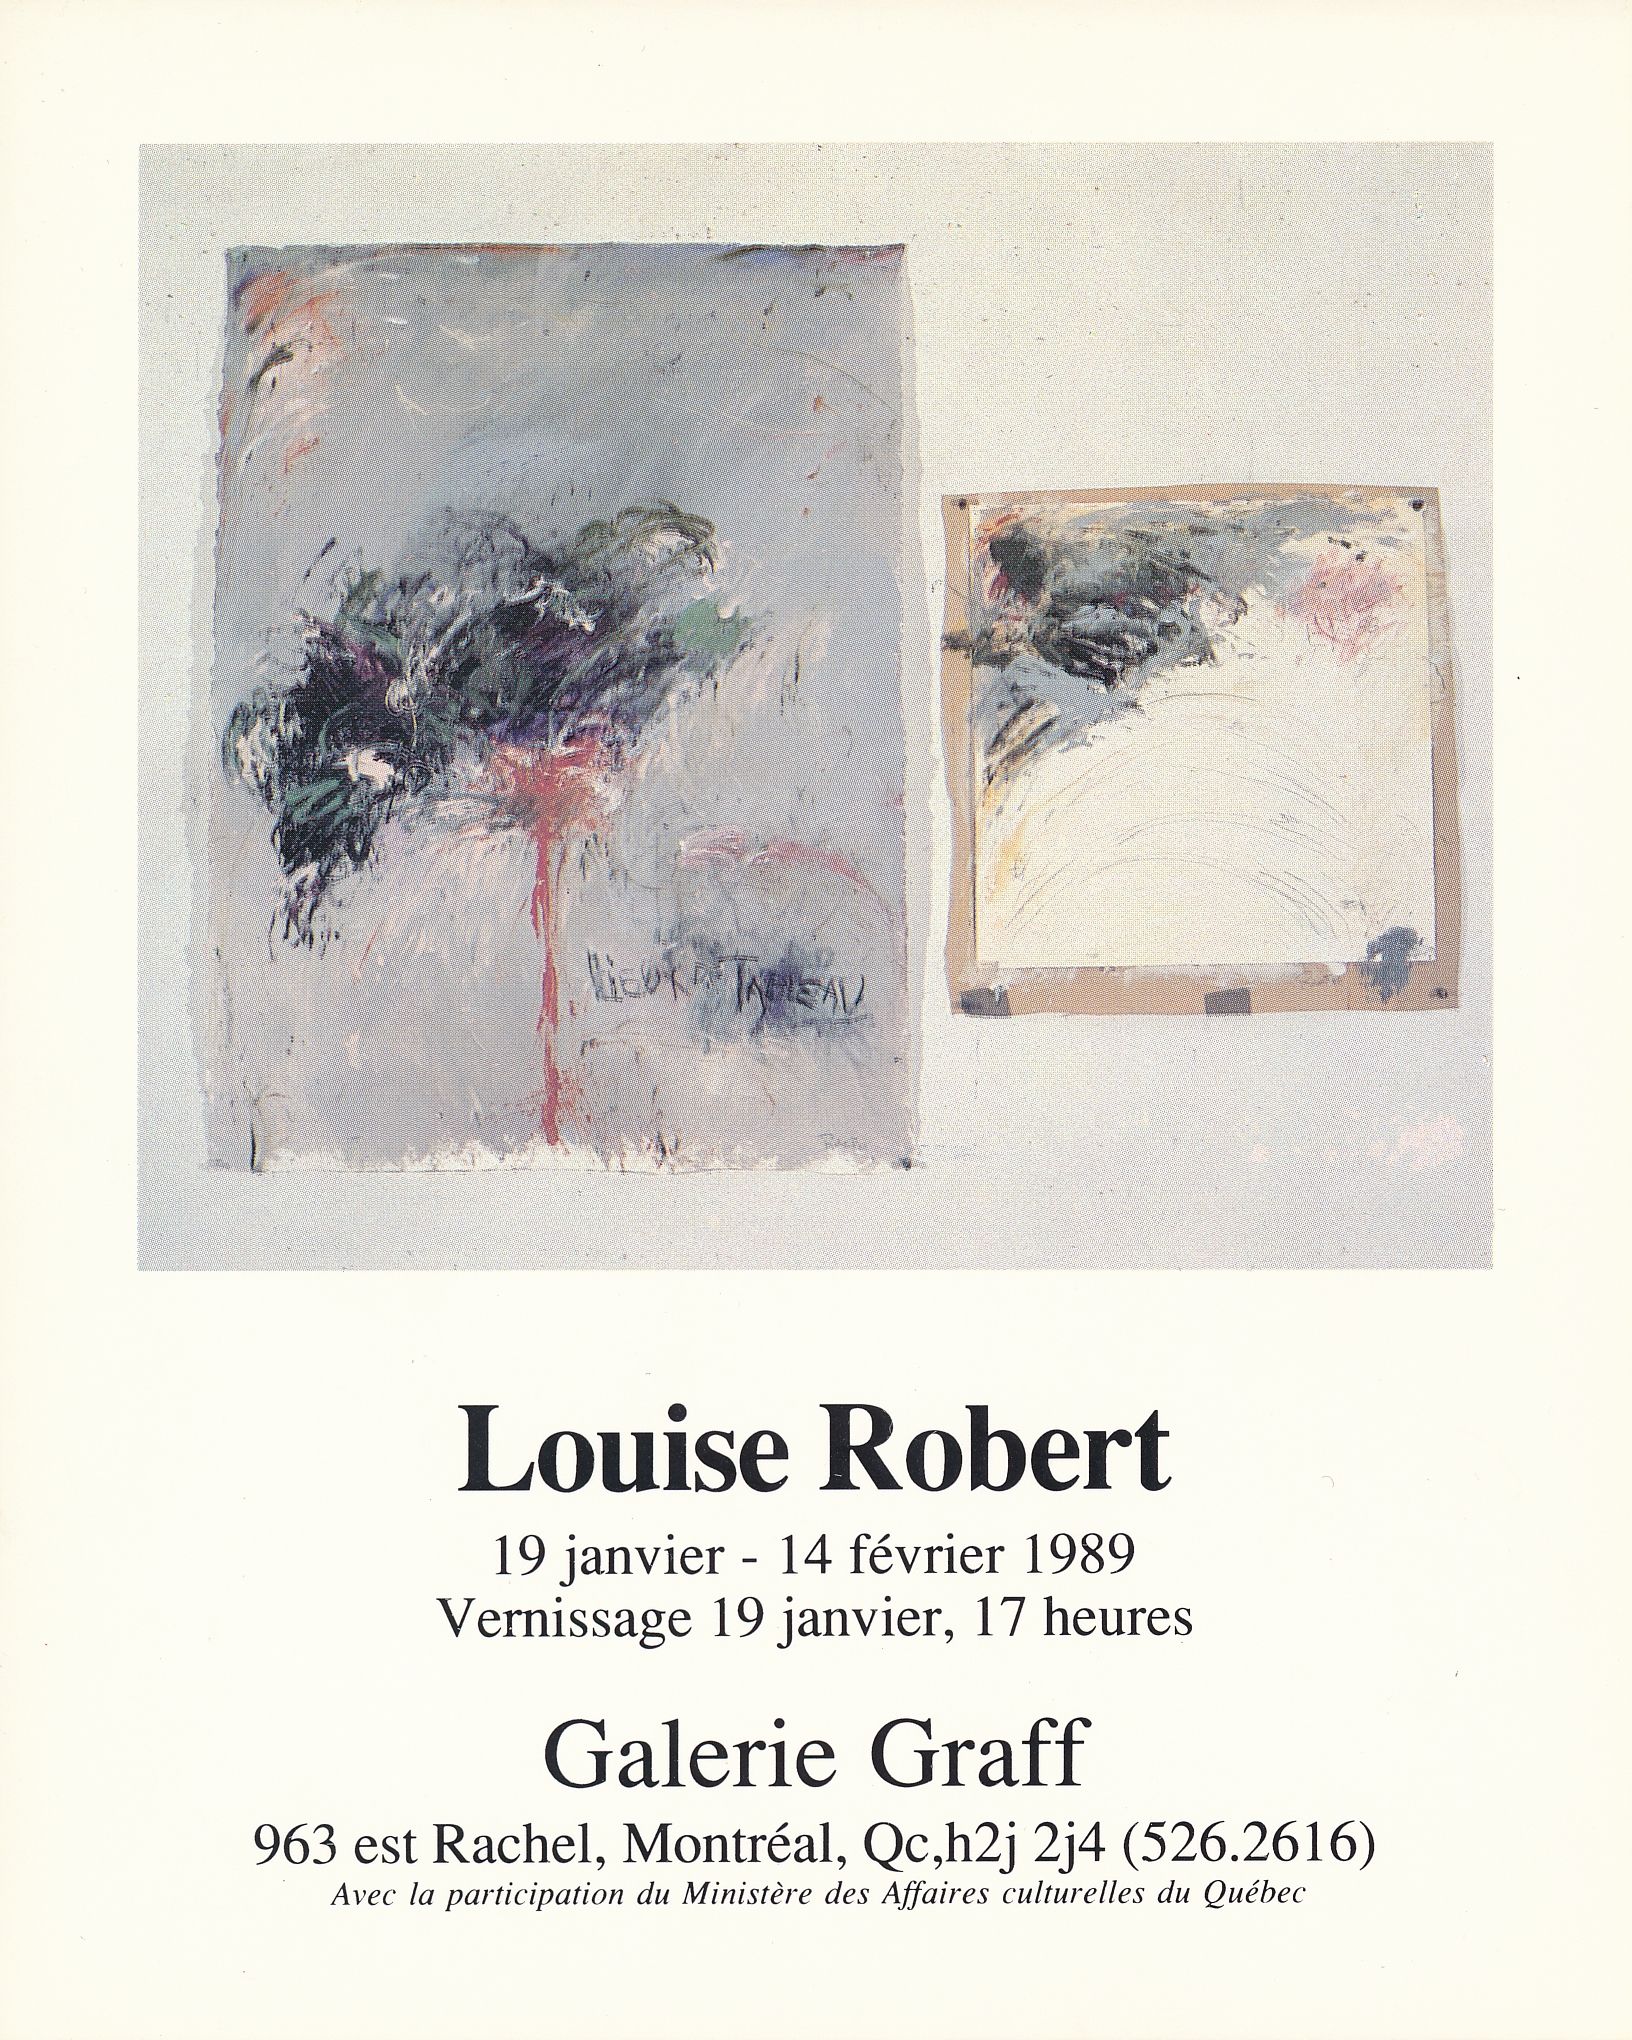 Carton d’invitation et liste d’œuvres de l’exposition Louise Robert. Œuvres récentes, Galerie Graff, Montréal, 1989.